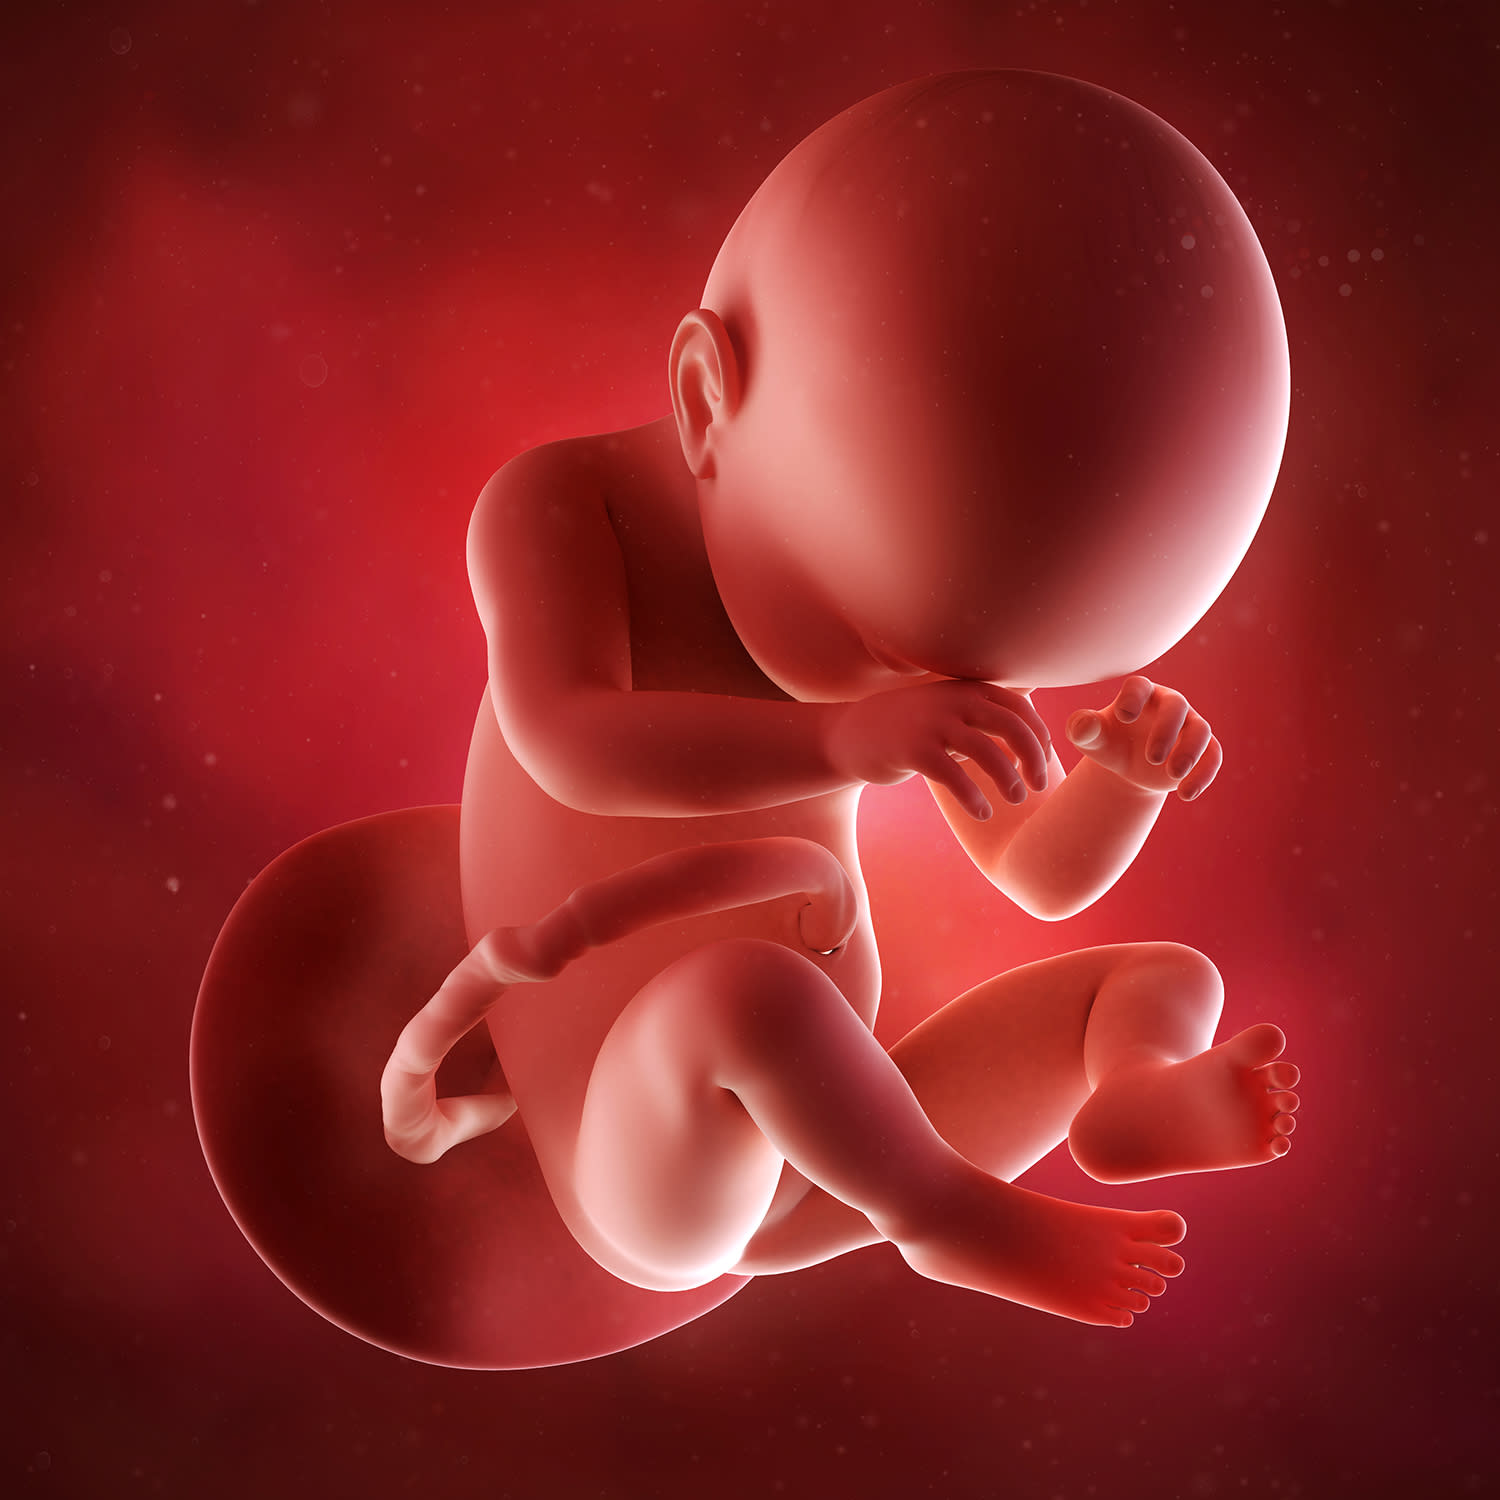 Малыш на 37 неделе. Эмбрион на 37 неделе беременности. Младенец в утробе.